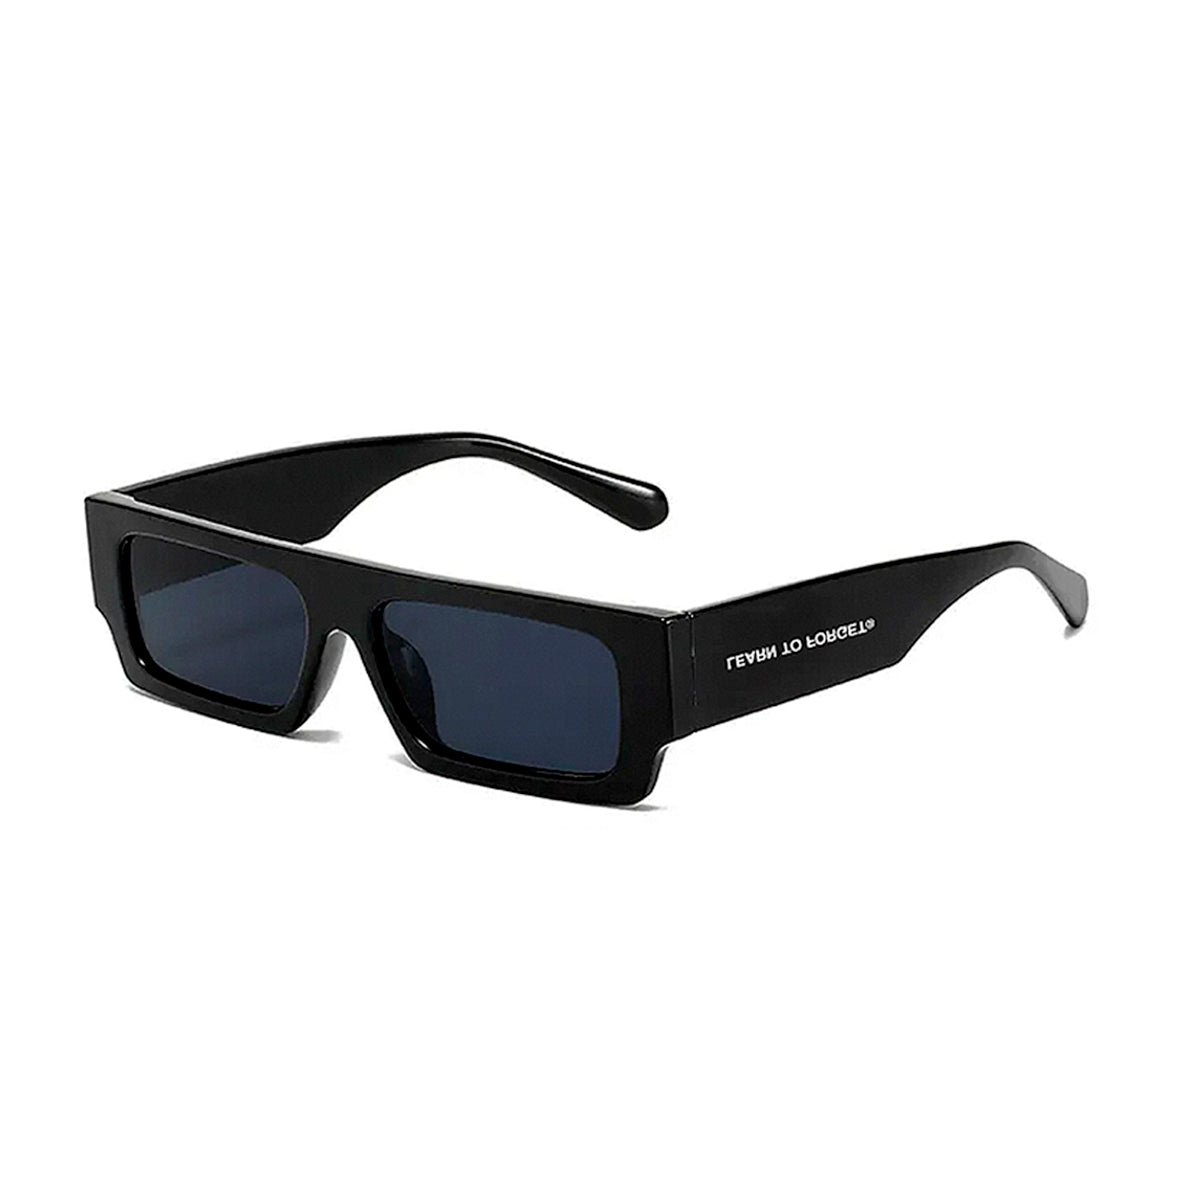 Hilco Low Rider Sunglasses - Hilco Authorized Retailer | coolframes.com